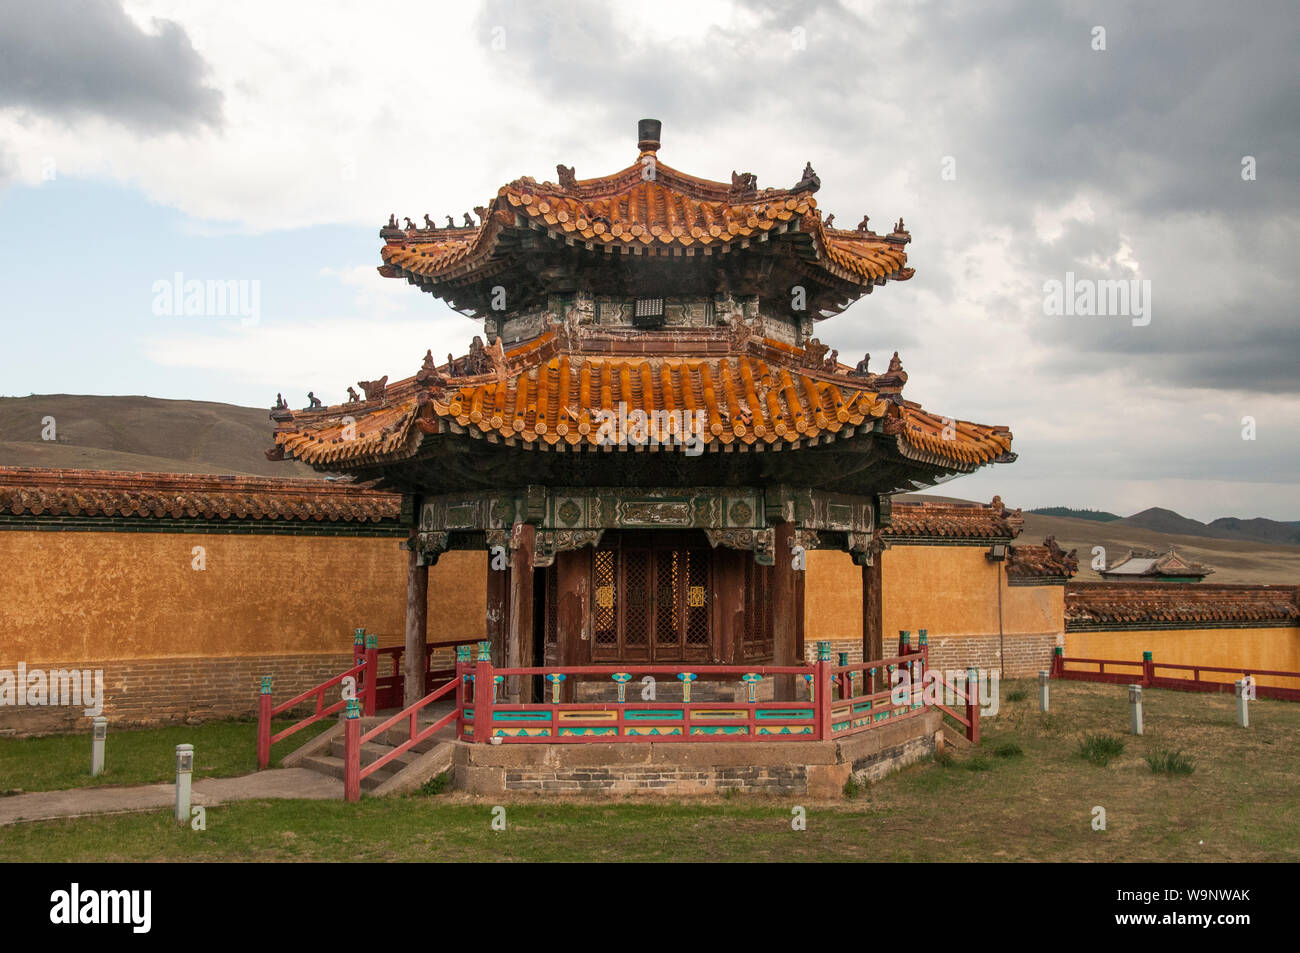 L'inspiration Mandchou Amarbayasgalant Khiid, au xviiie siècle un monastère bouddhiste dans la télécommande, de la vallée de l'Orkhon aimag Selenge, dans le nord de la Mongolie Banque D'Images